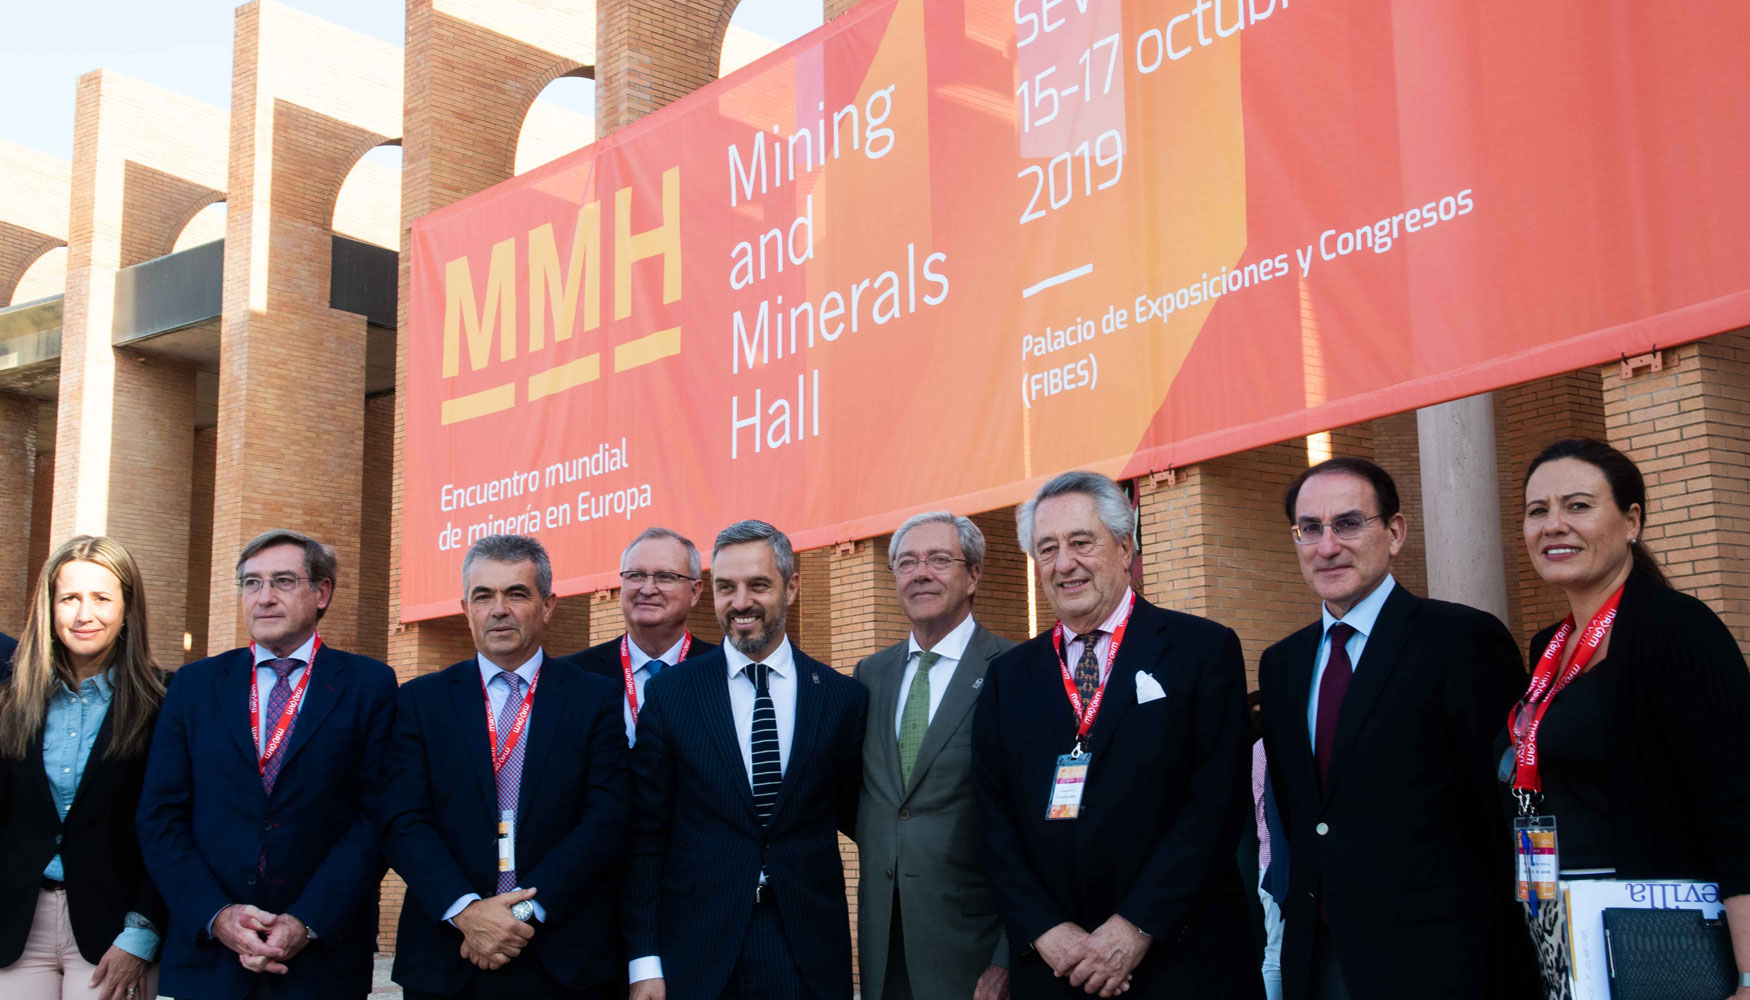 El Mining and Mineral Halls (MMH) se confirma como una de las grandes citas mineras internacionales